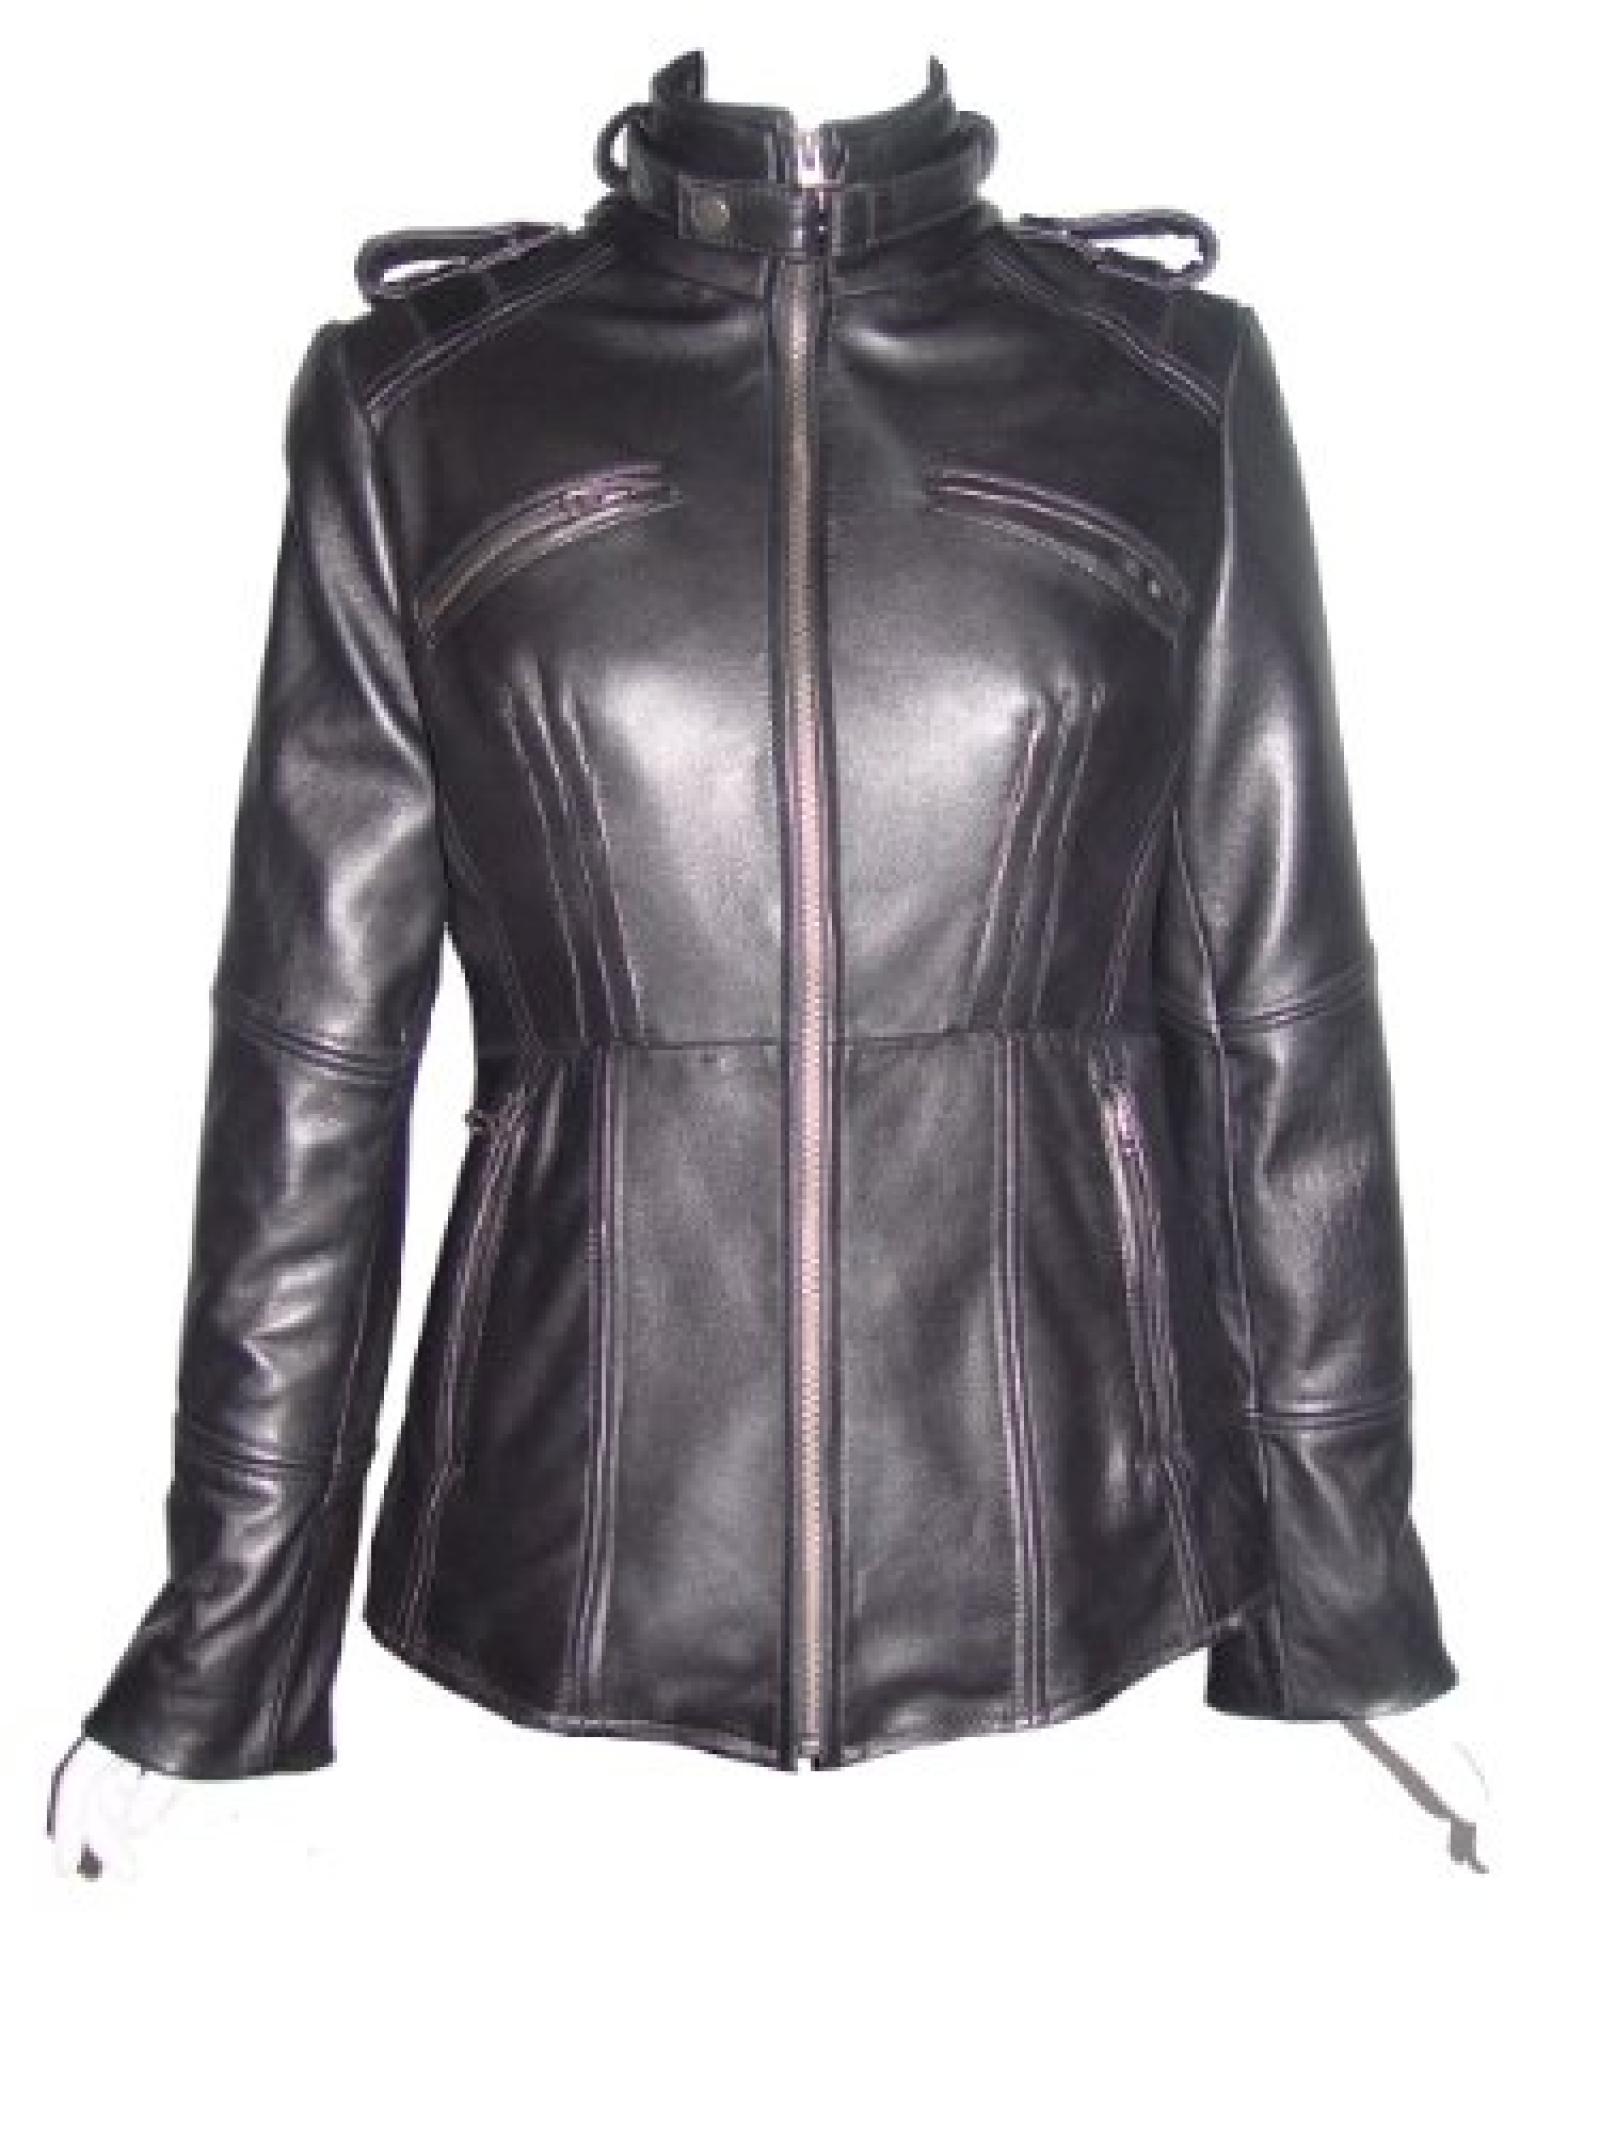 Nettailor Women PETITE SZ 4205 Leather Casual Jacket Placket Welt Pocket Quilt 